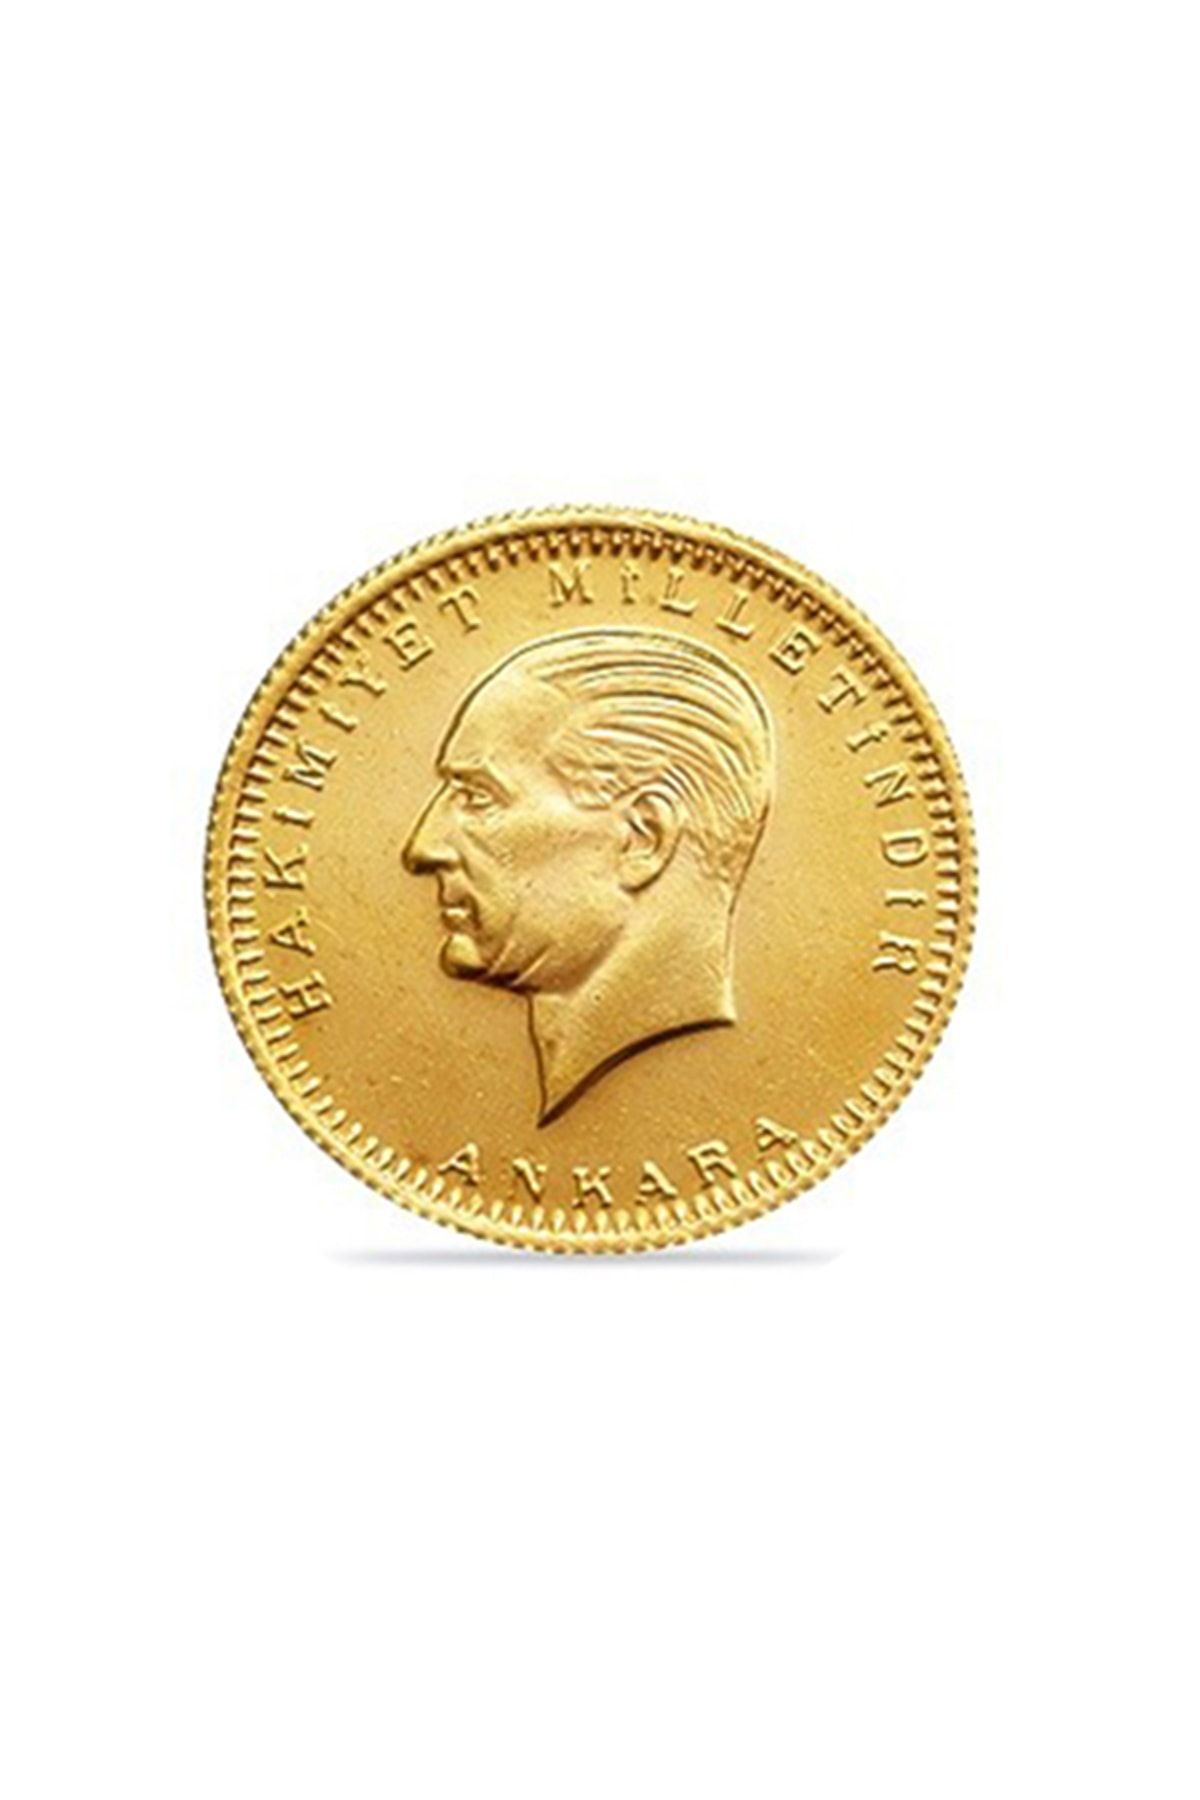 Safır Gold 1 Adet Eski Tarihli Cumhuriyet Altını SALE0001